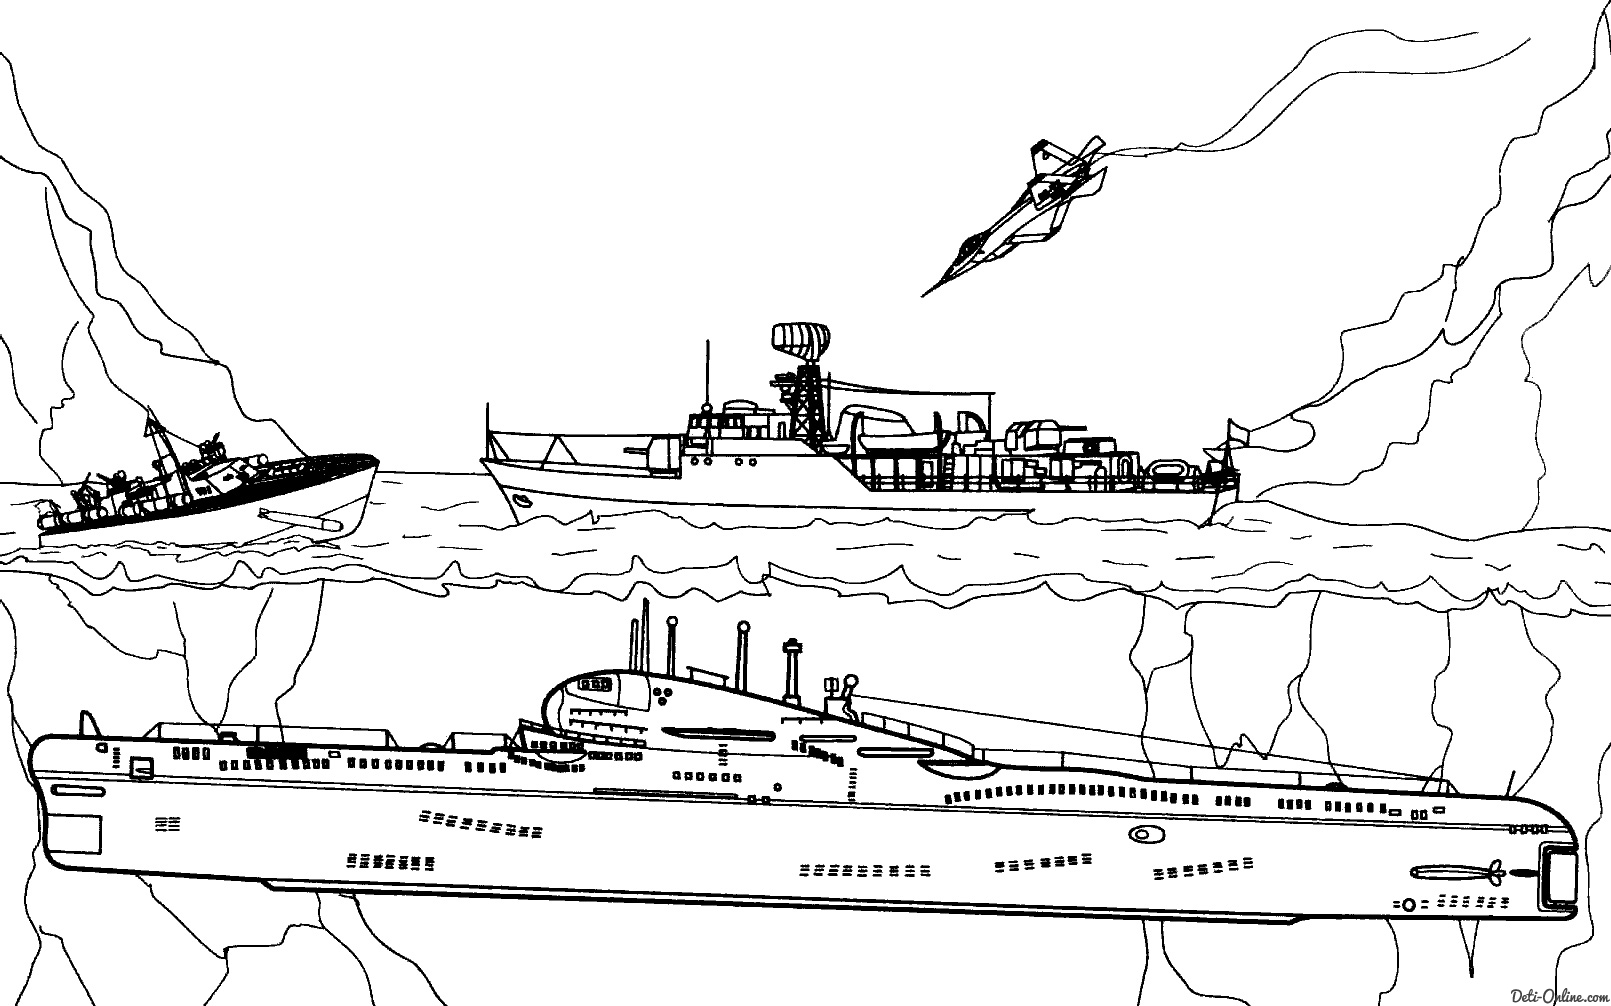  раскраски на тему подводные лодки для детей.  раскраски с подводными лодками для мальчиков и девочек.             